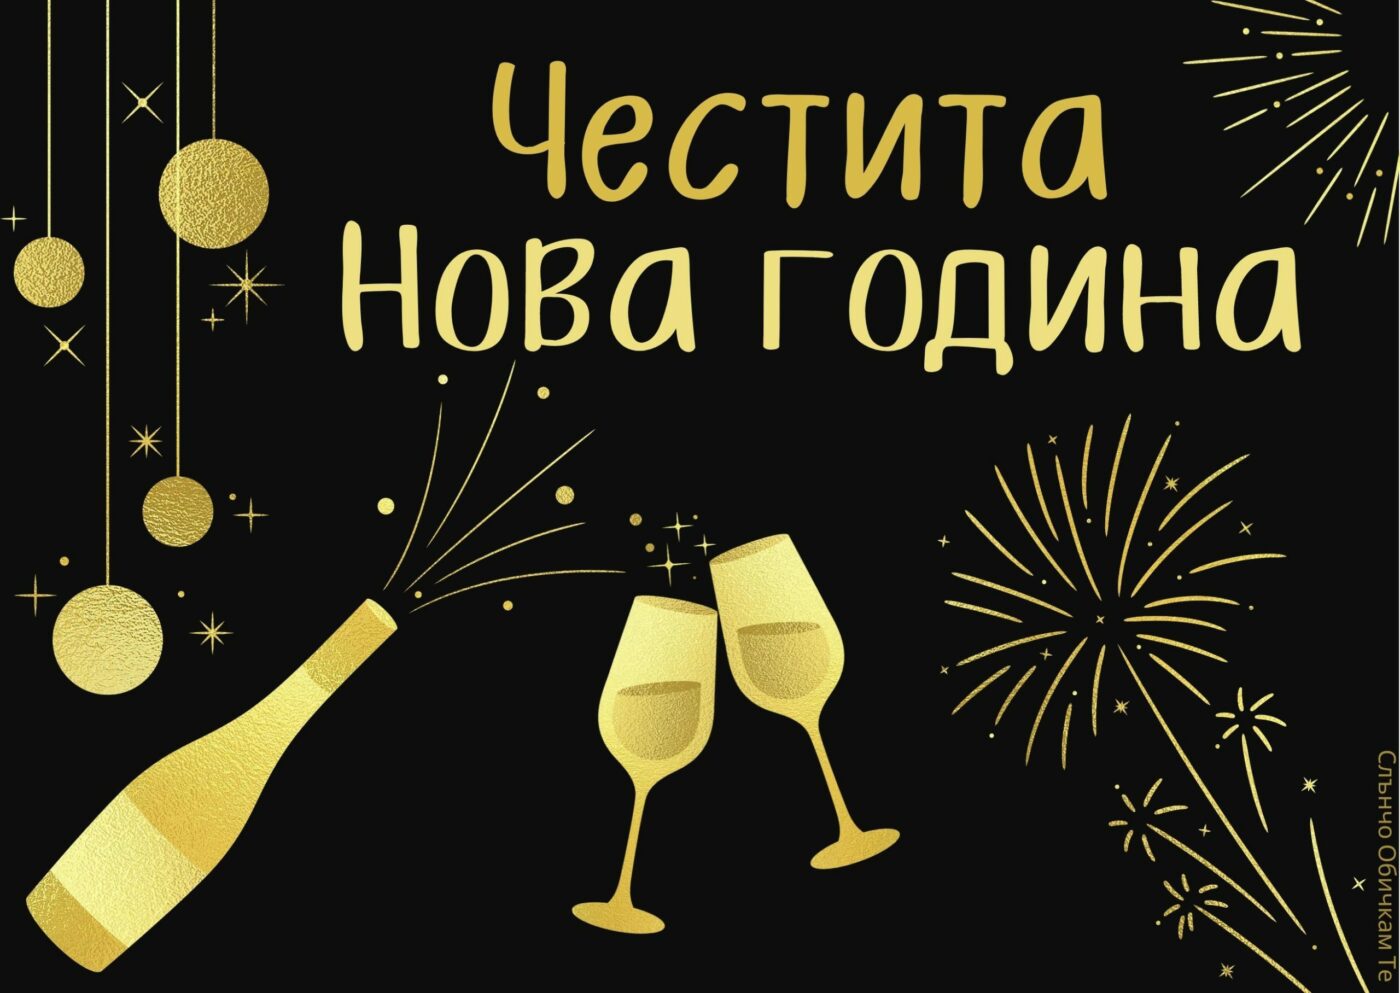 Честита нова година със златни надписи - картички за Нова година, 2022, новогодишни картички с пожелания, за много години, щастлива нова година